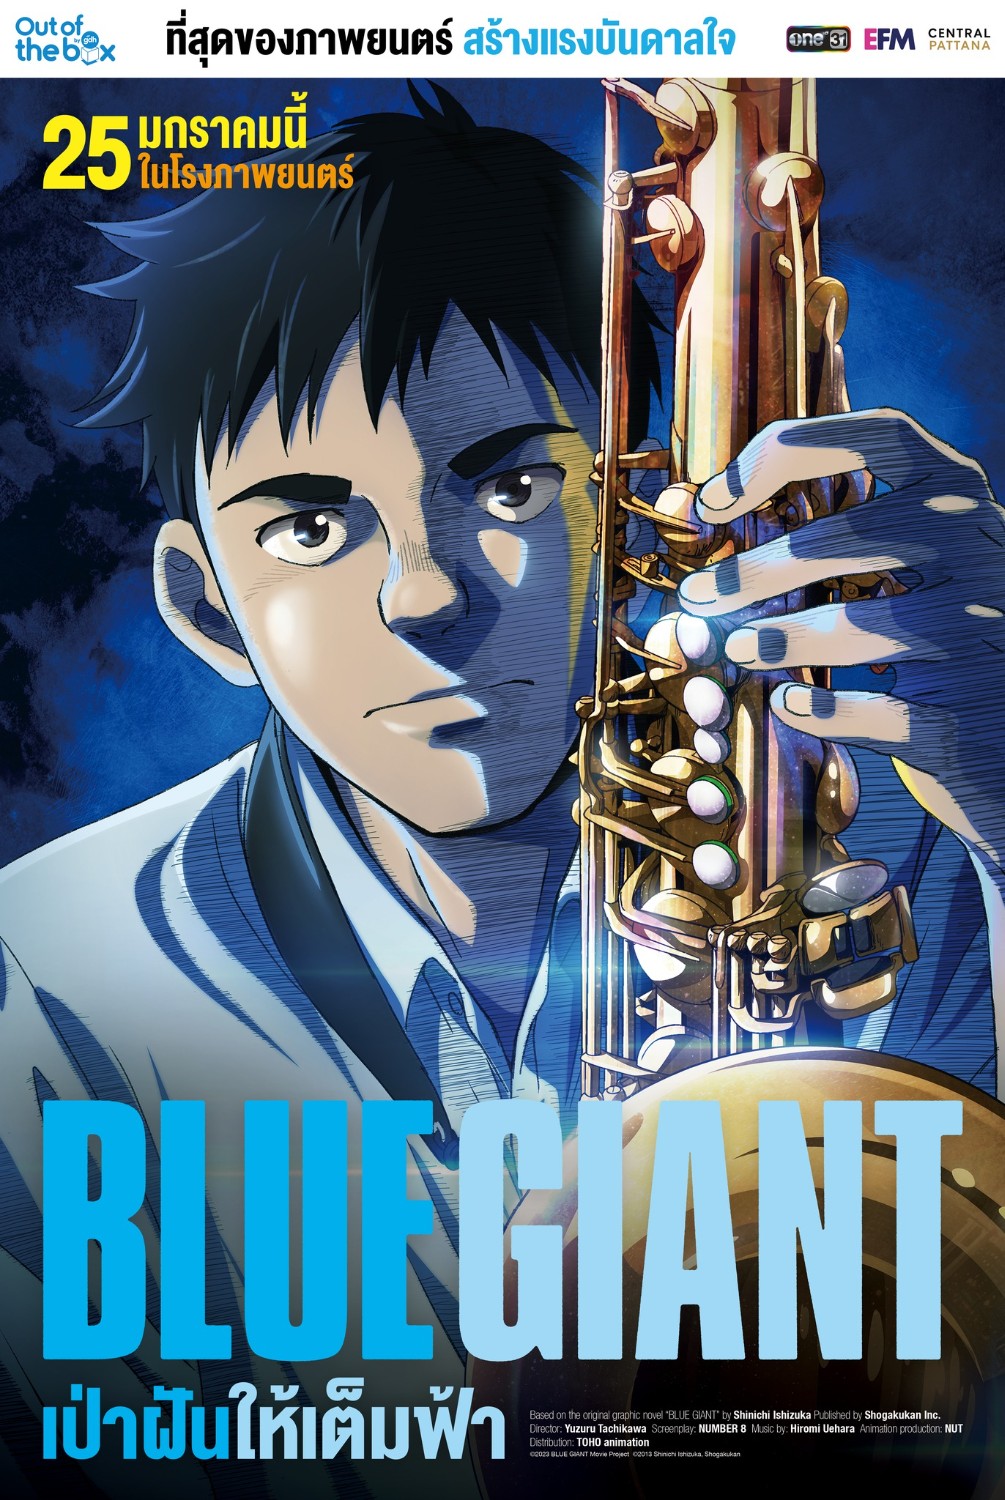 [9/10] BLUE GIANT การวิ่งไล่ตามความฝันของคนที่รักดนตรีแจ๊ส - Pantip